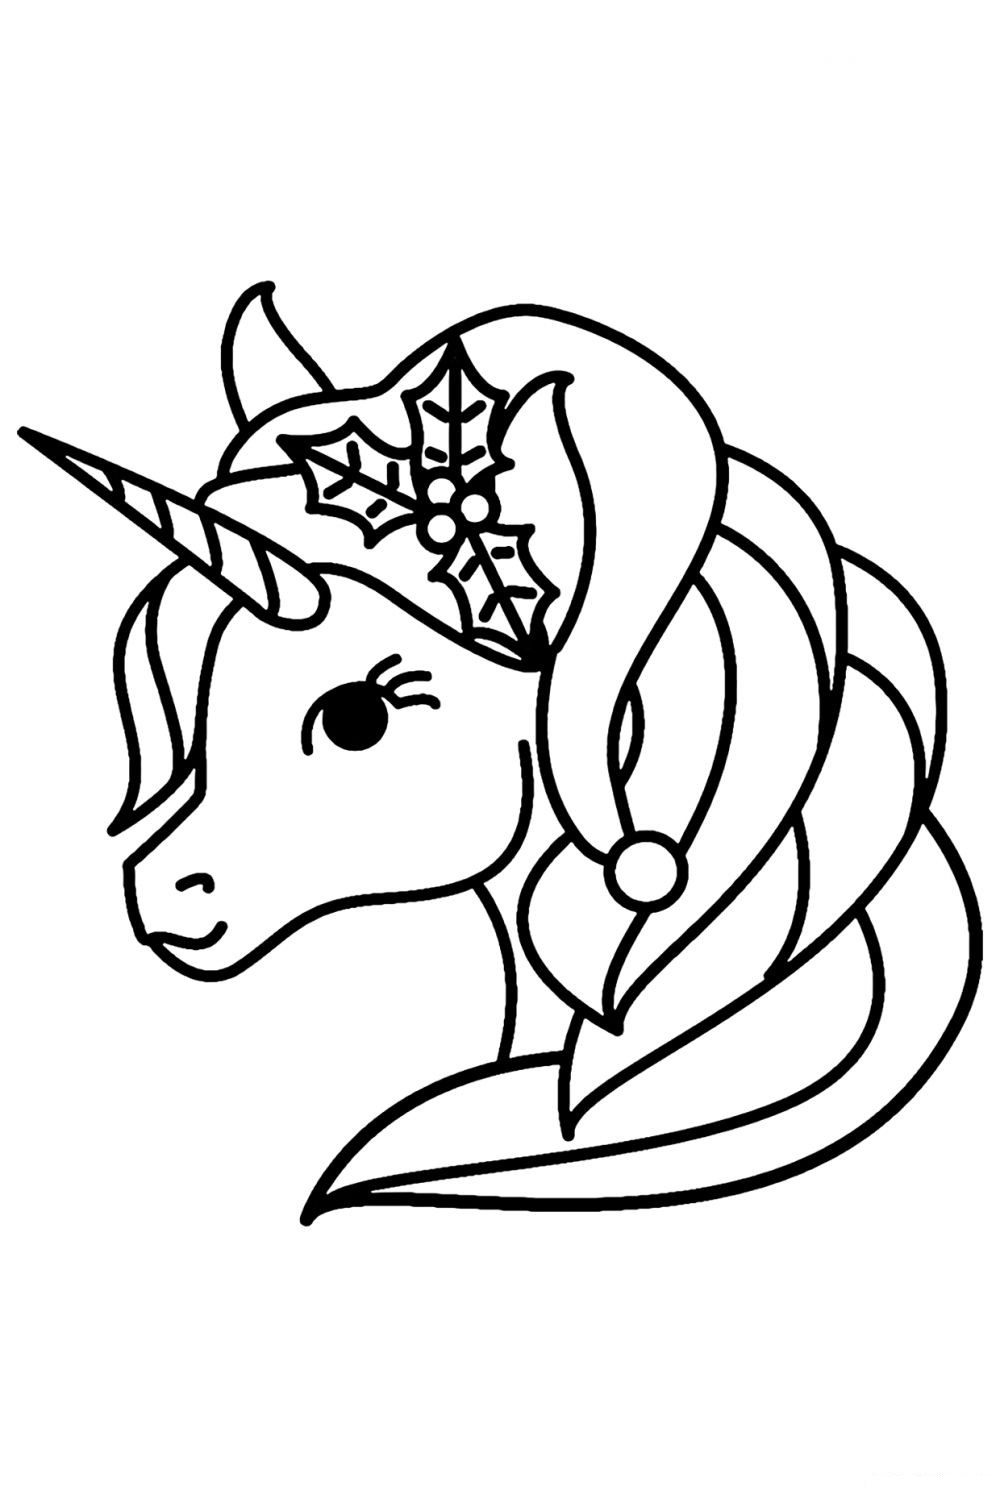 Dibujo 49 de unicornio para imprimir y colorear